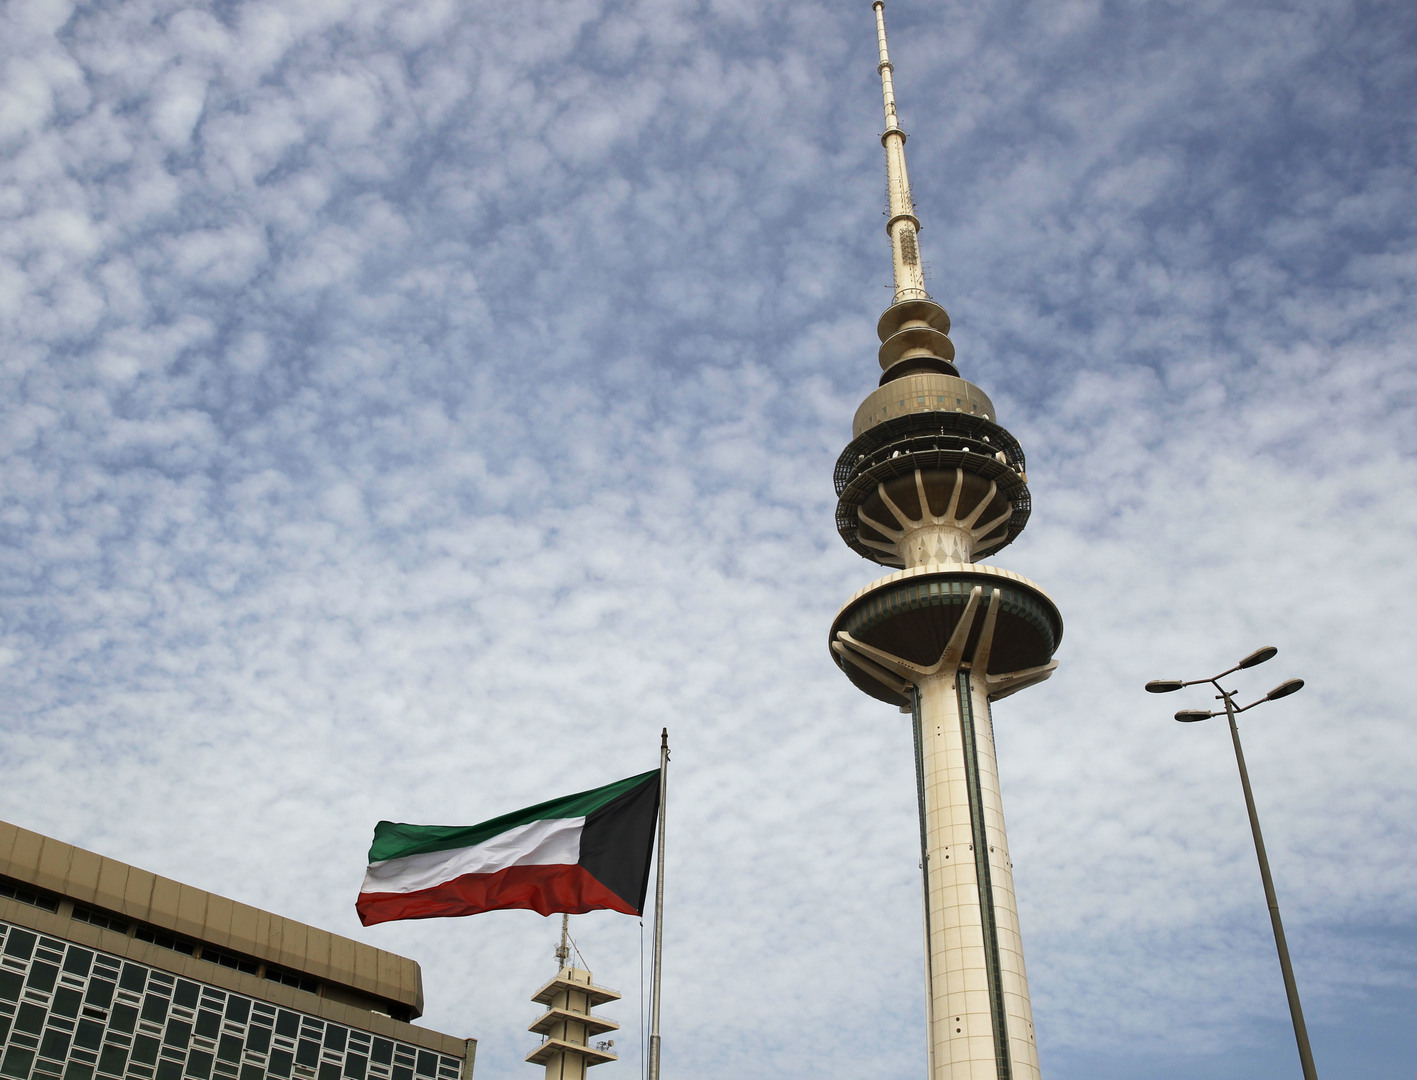 الحكومة الكويتية تؤدي القسم وأمير البلاد يوجه كلمة للوزراء الجدد (فيديو)